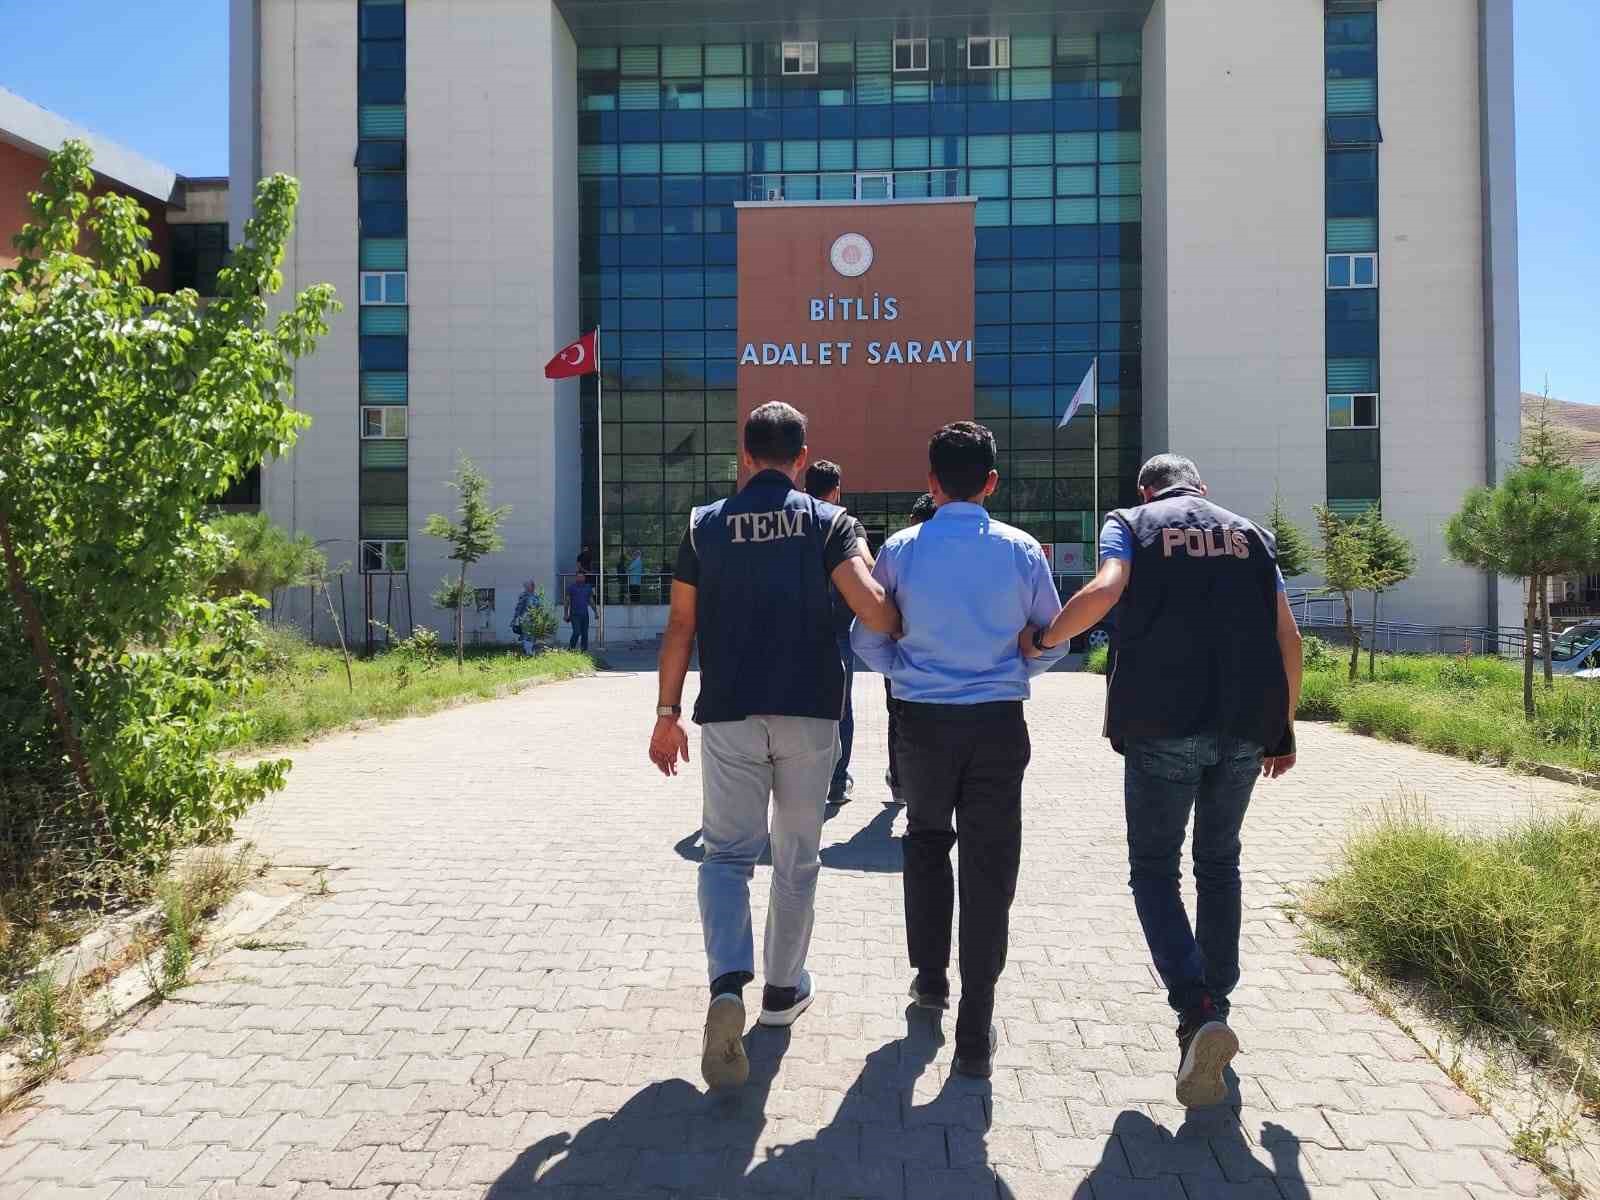 Bitlis Merkezli 7 İlde Fetö Operasyonu Yapıldı: 9 Kişi Gözaltına Alındı